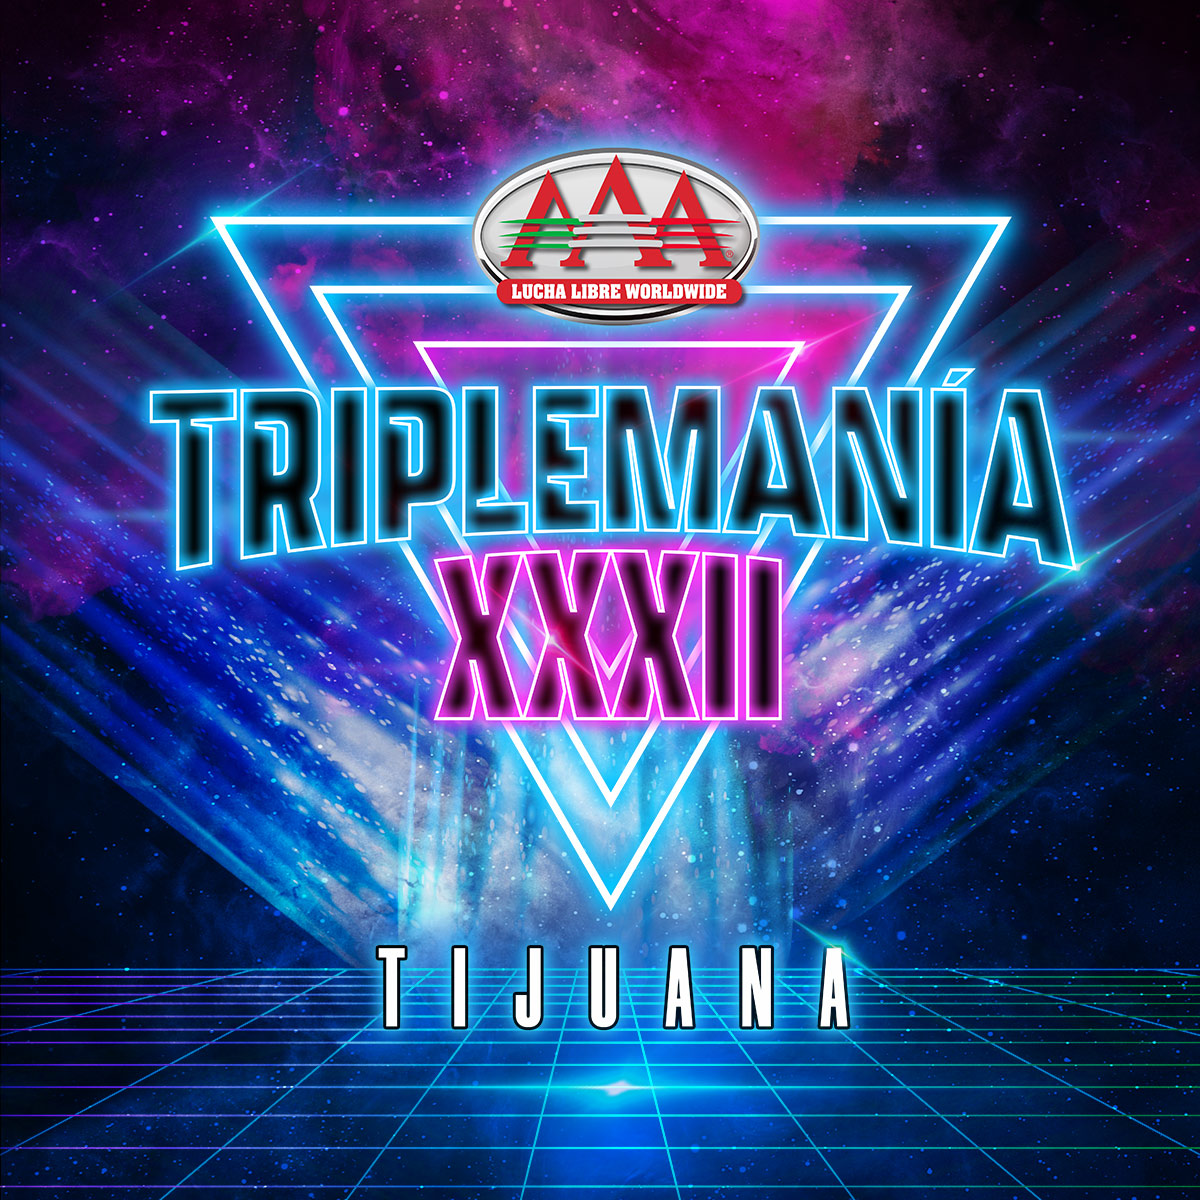 Que nadie te lo cuente, asegura tu lugar en #TriplemaniaXXXII Tijuana. 🤩

🗓️ 15 de Junio. | ⌚ 6:00 PM.
🎟️ Boletos a la venta en @boletomovil.